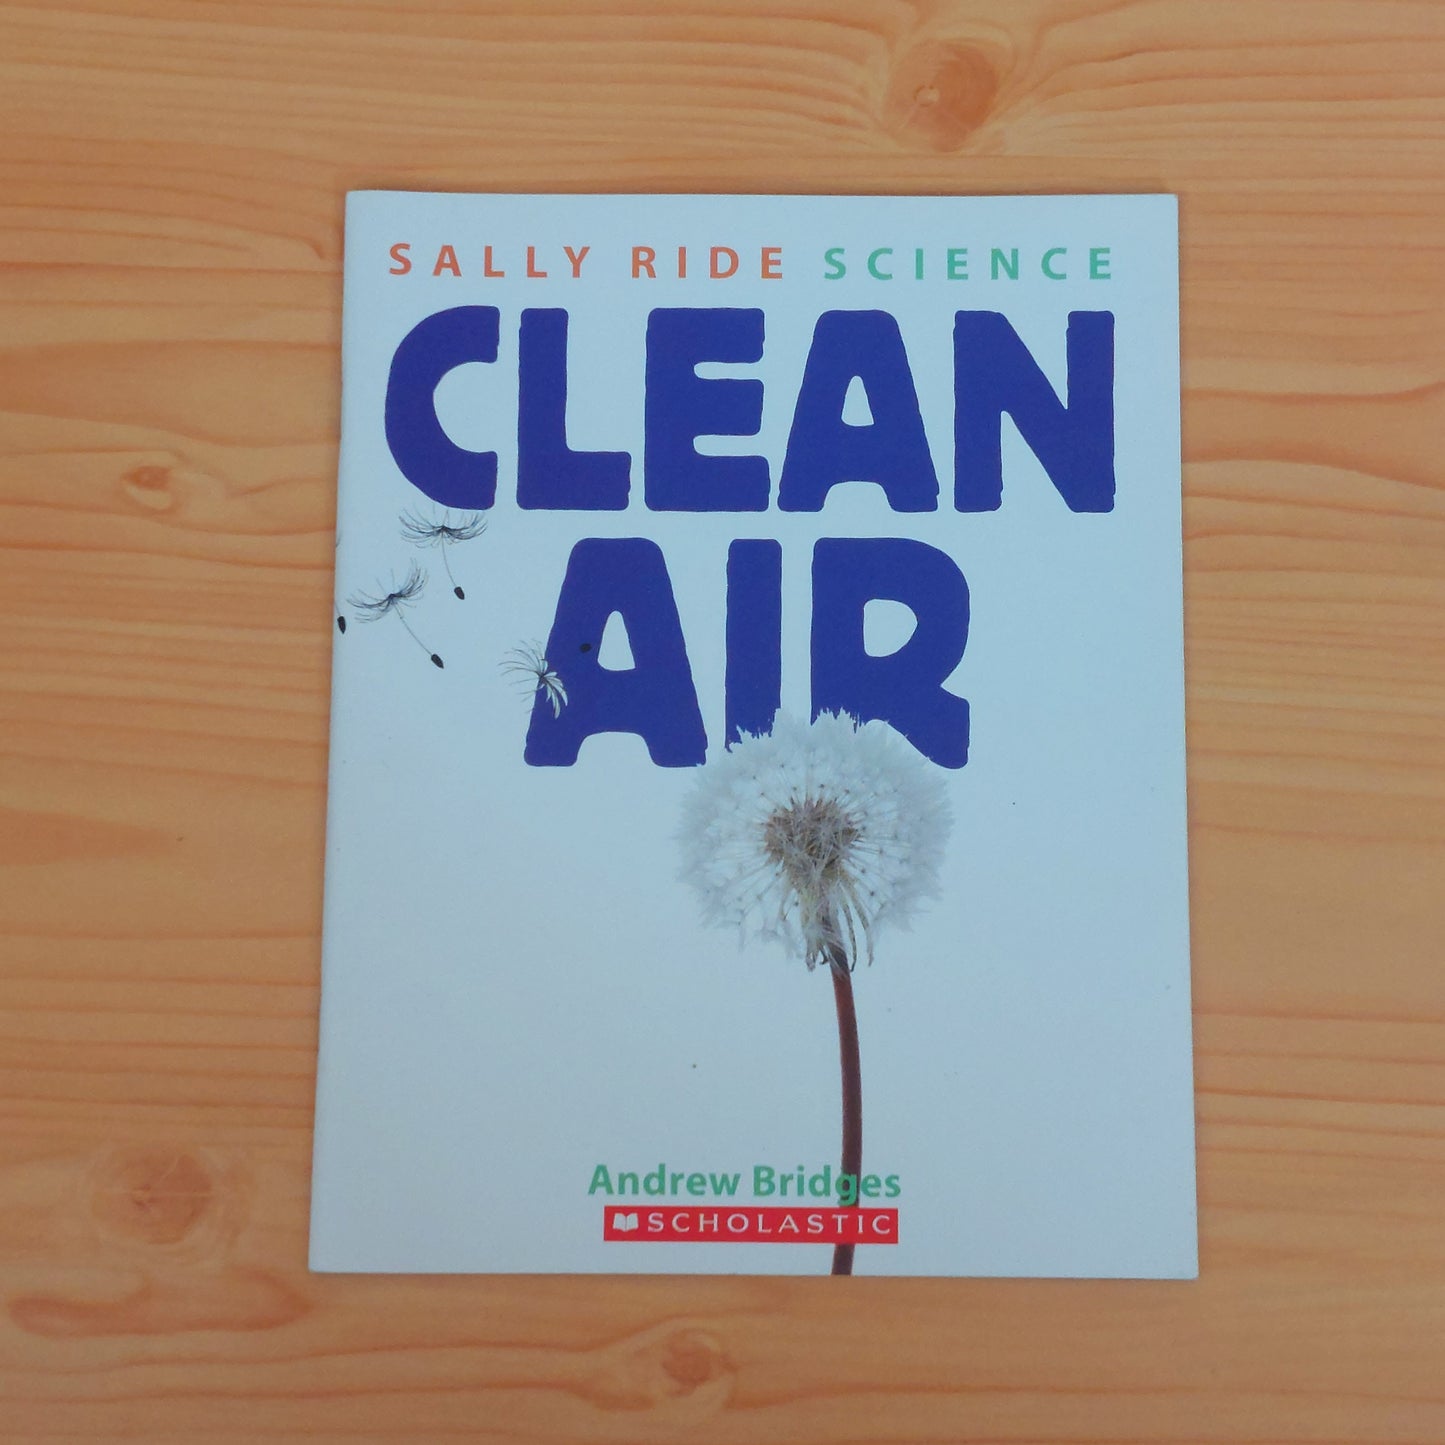 Clean Air